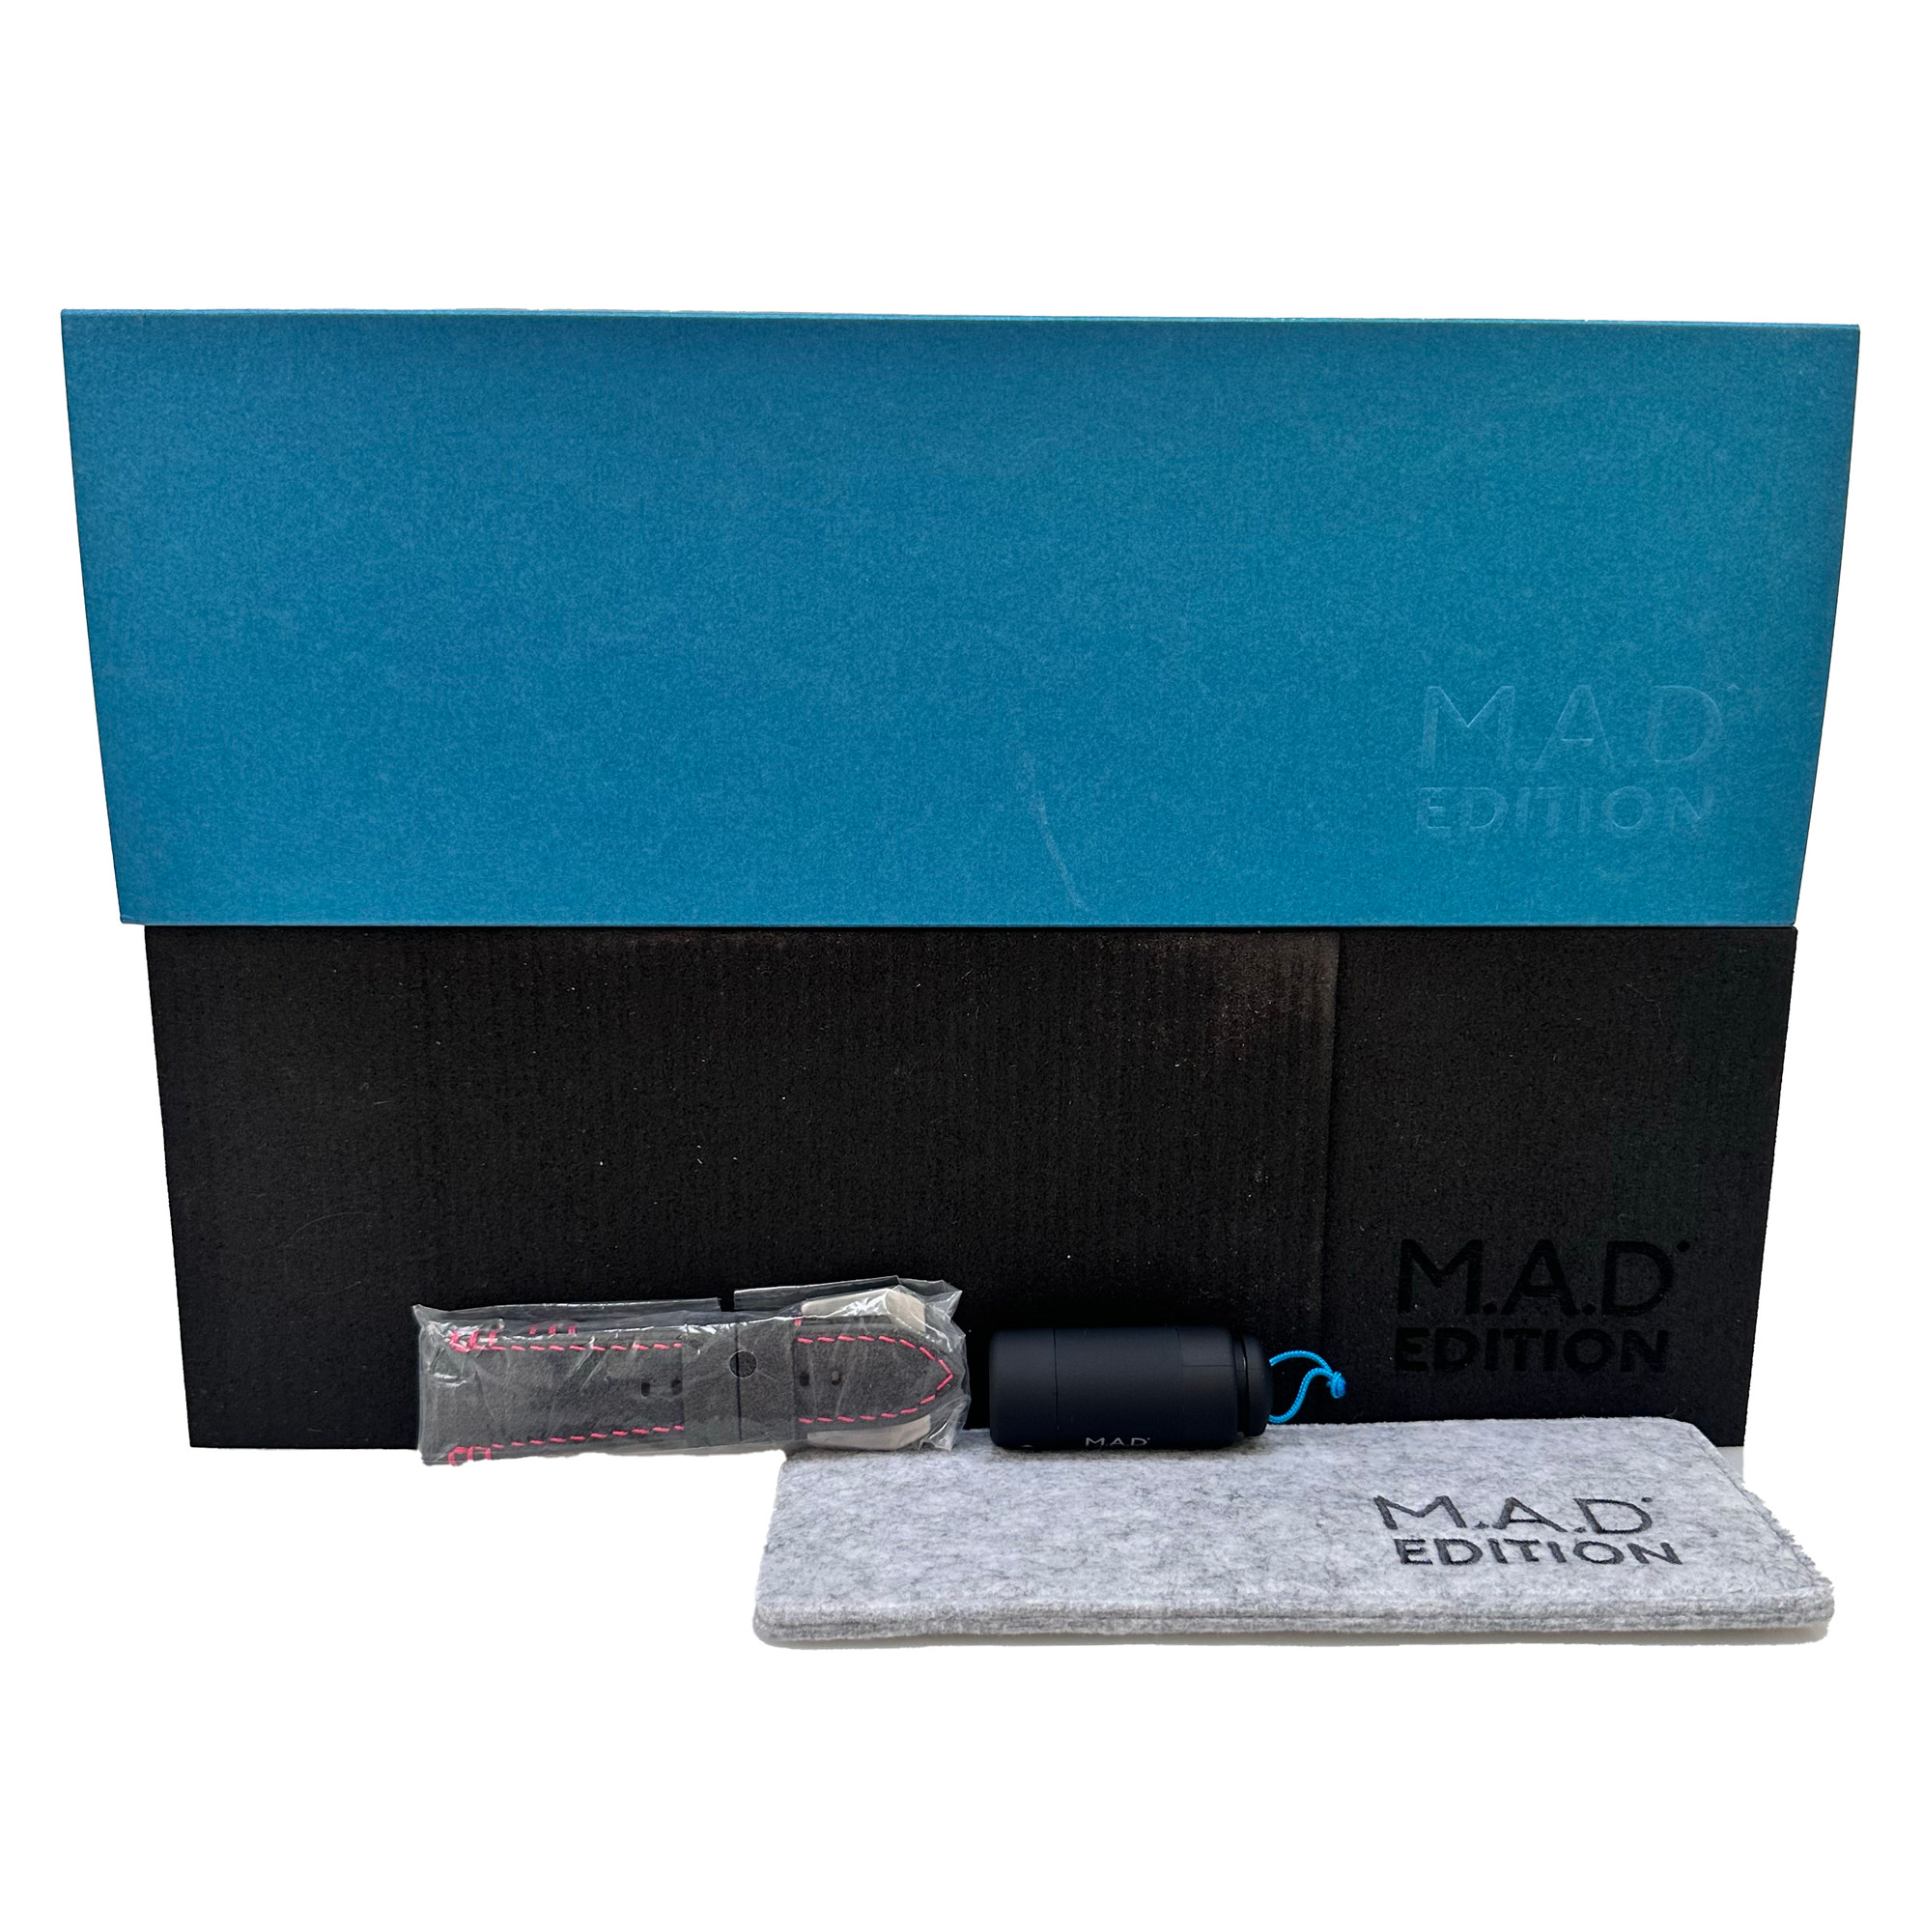 MB&F MAD Editions Raffles M.A.D.1.  *Unworn* - Inventory 4927 